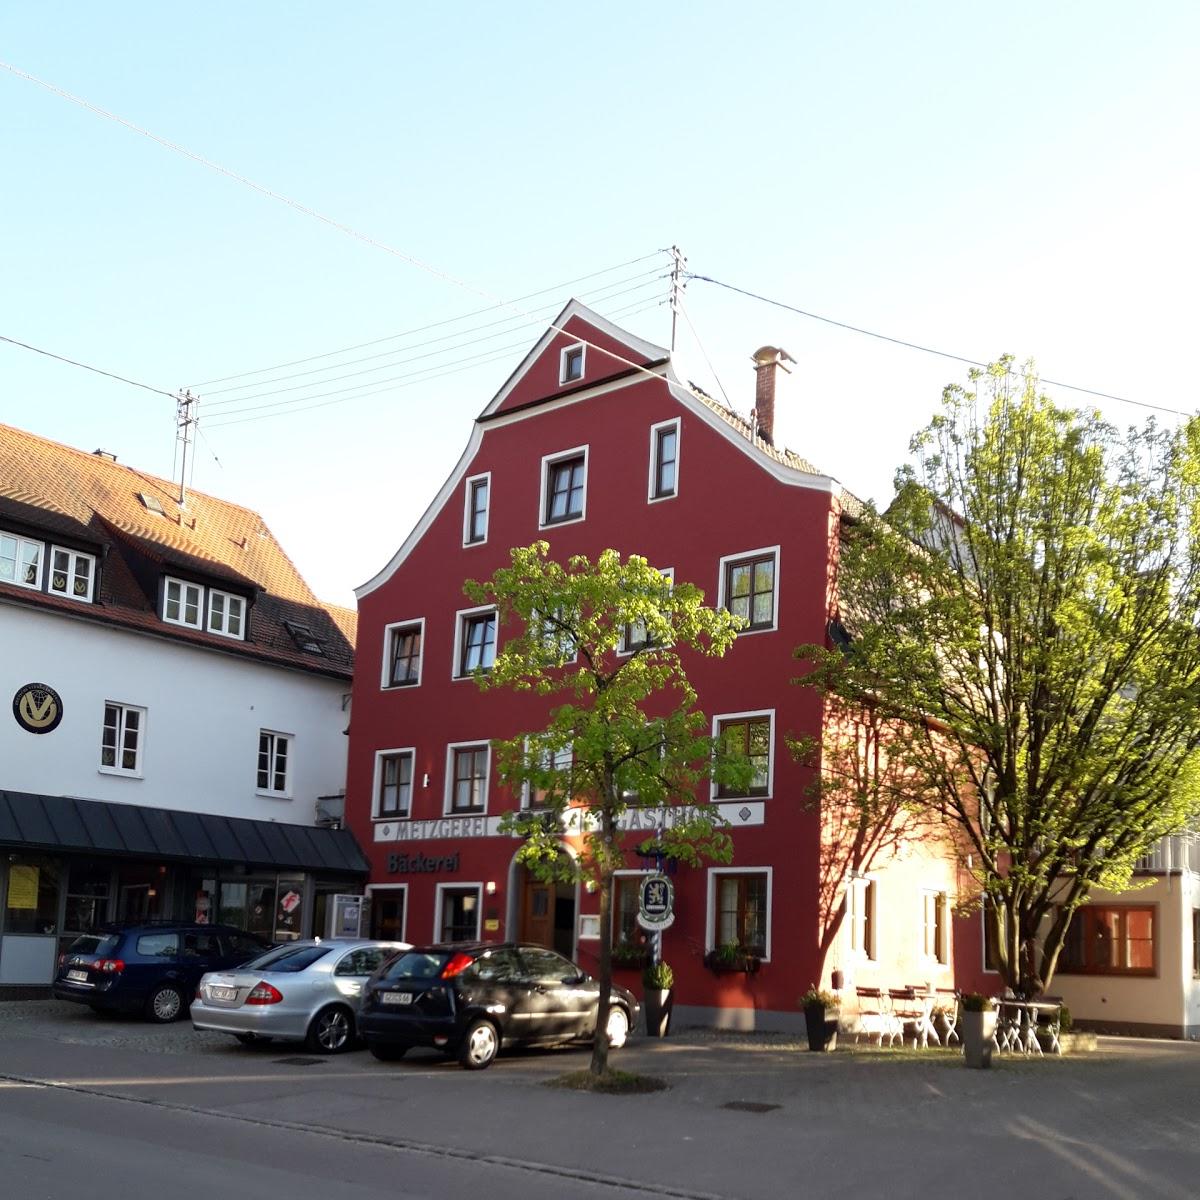 Restaurant "Hotel Falk" in Krumbach (Schwaben)